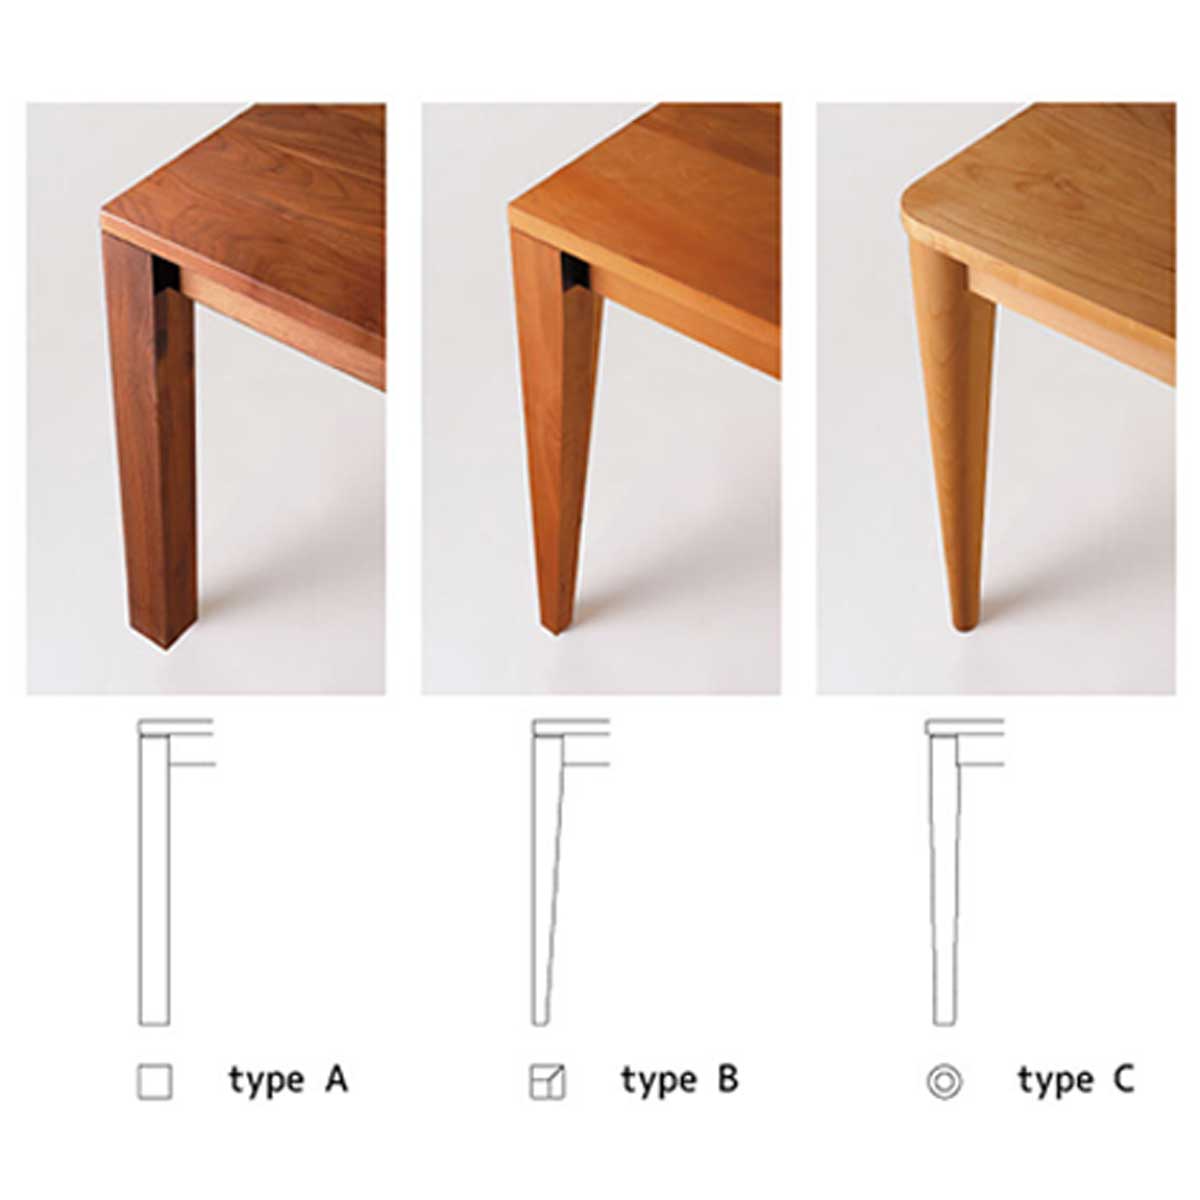 リーブス ダイニングテーブルブラックチェリー材は、脚の形はAタイプ（角脚）、Bタイプ（角脚下細り）、Cタイプ（丸脚下細り）の3種類から選べます